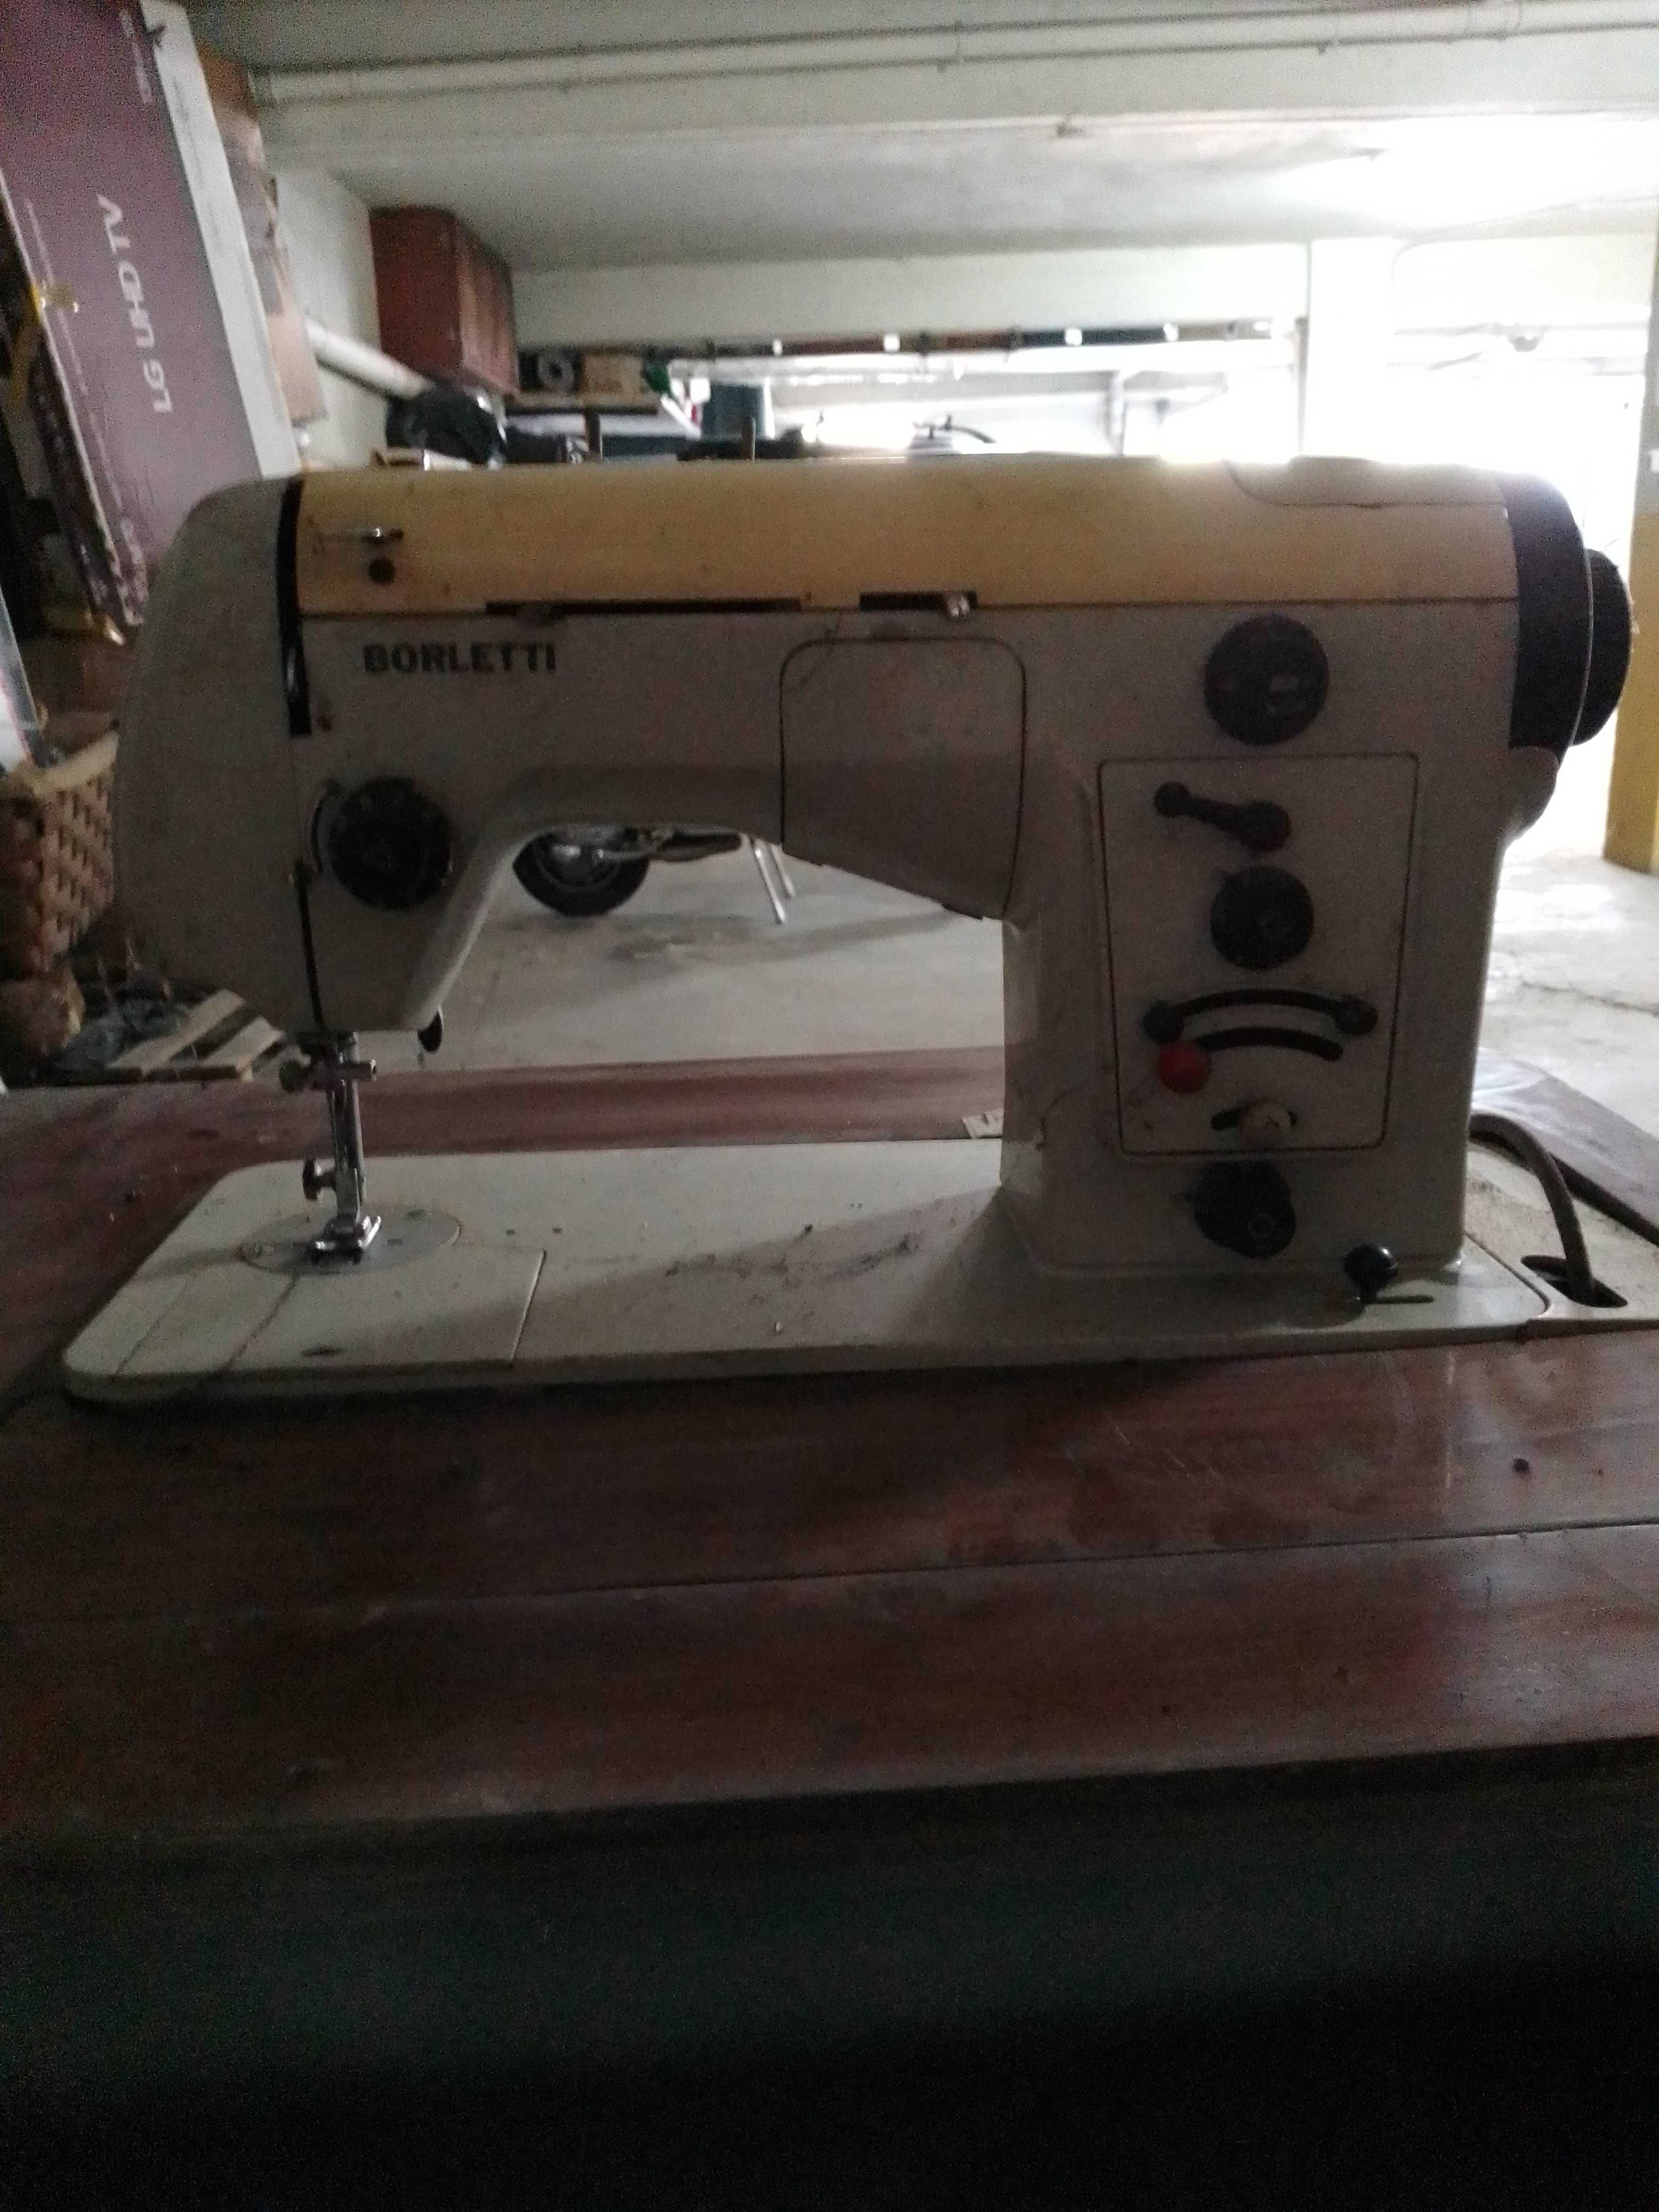 Máquina costura antiga borletti. No